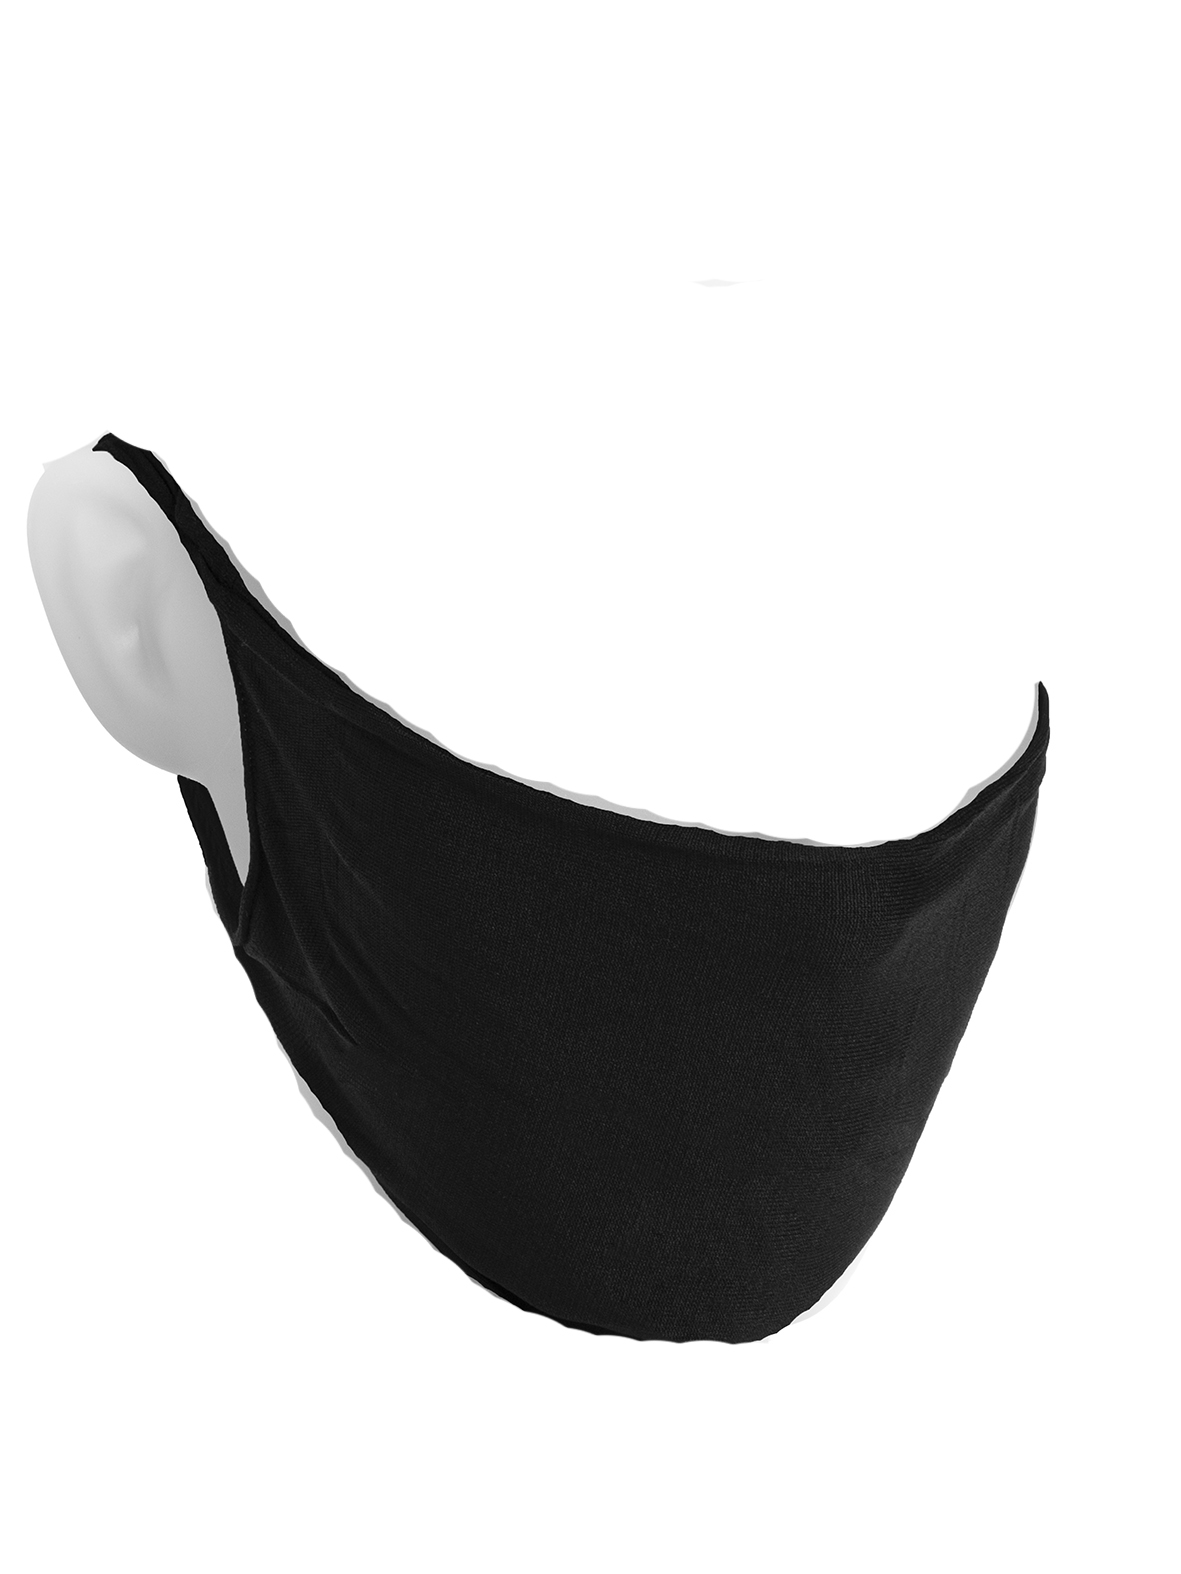 Herbruikbare wasbare Mondmaskers Mondkapjes zwart NIET MEDISCH 10 stuks met Oeko-Tex standard 100 label